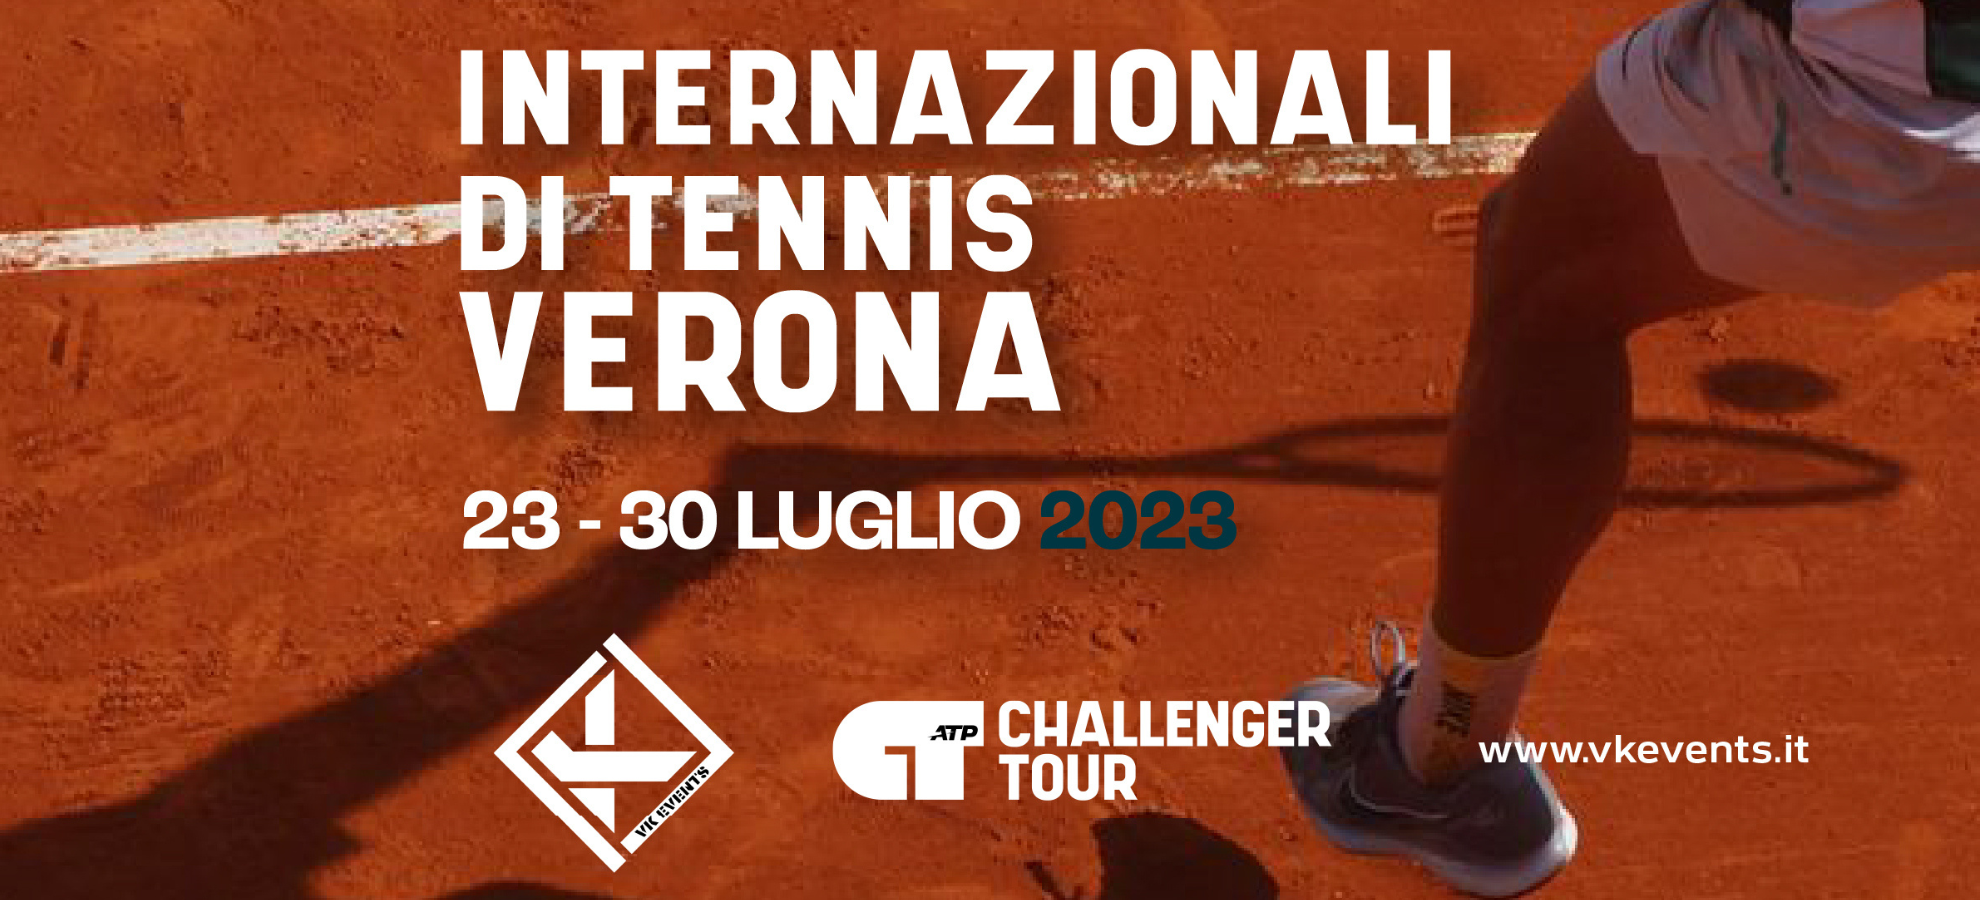 Internazionali di Tennis Verona 2023